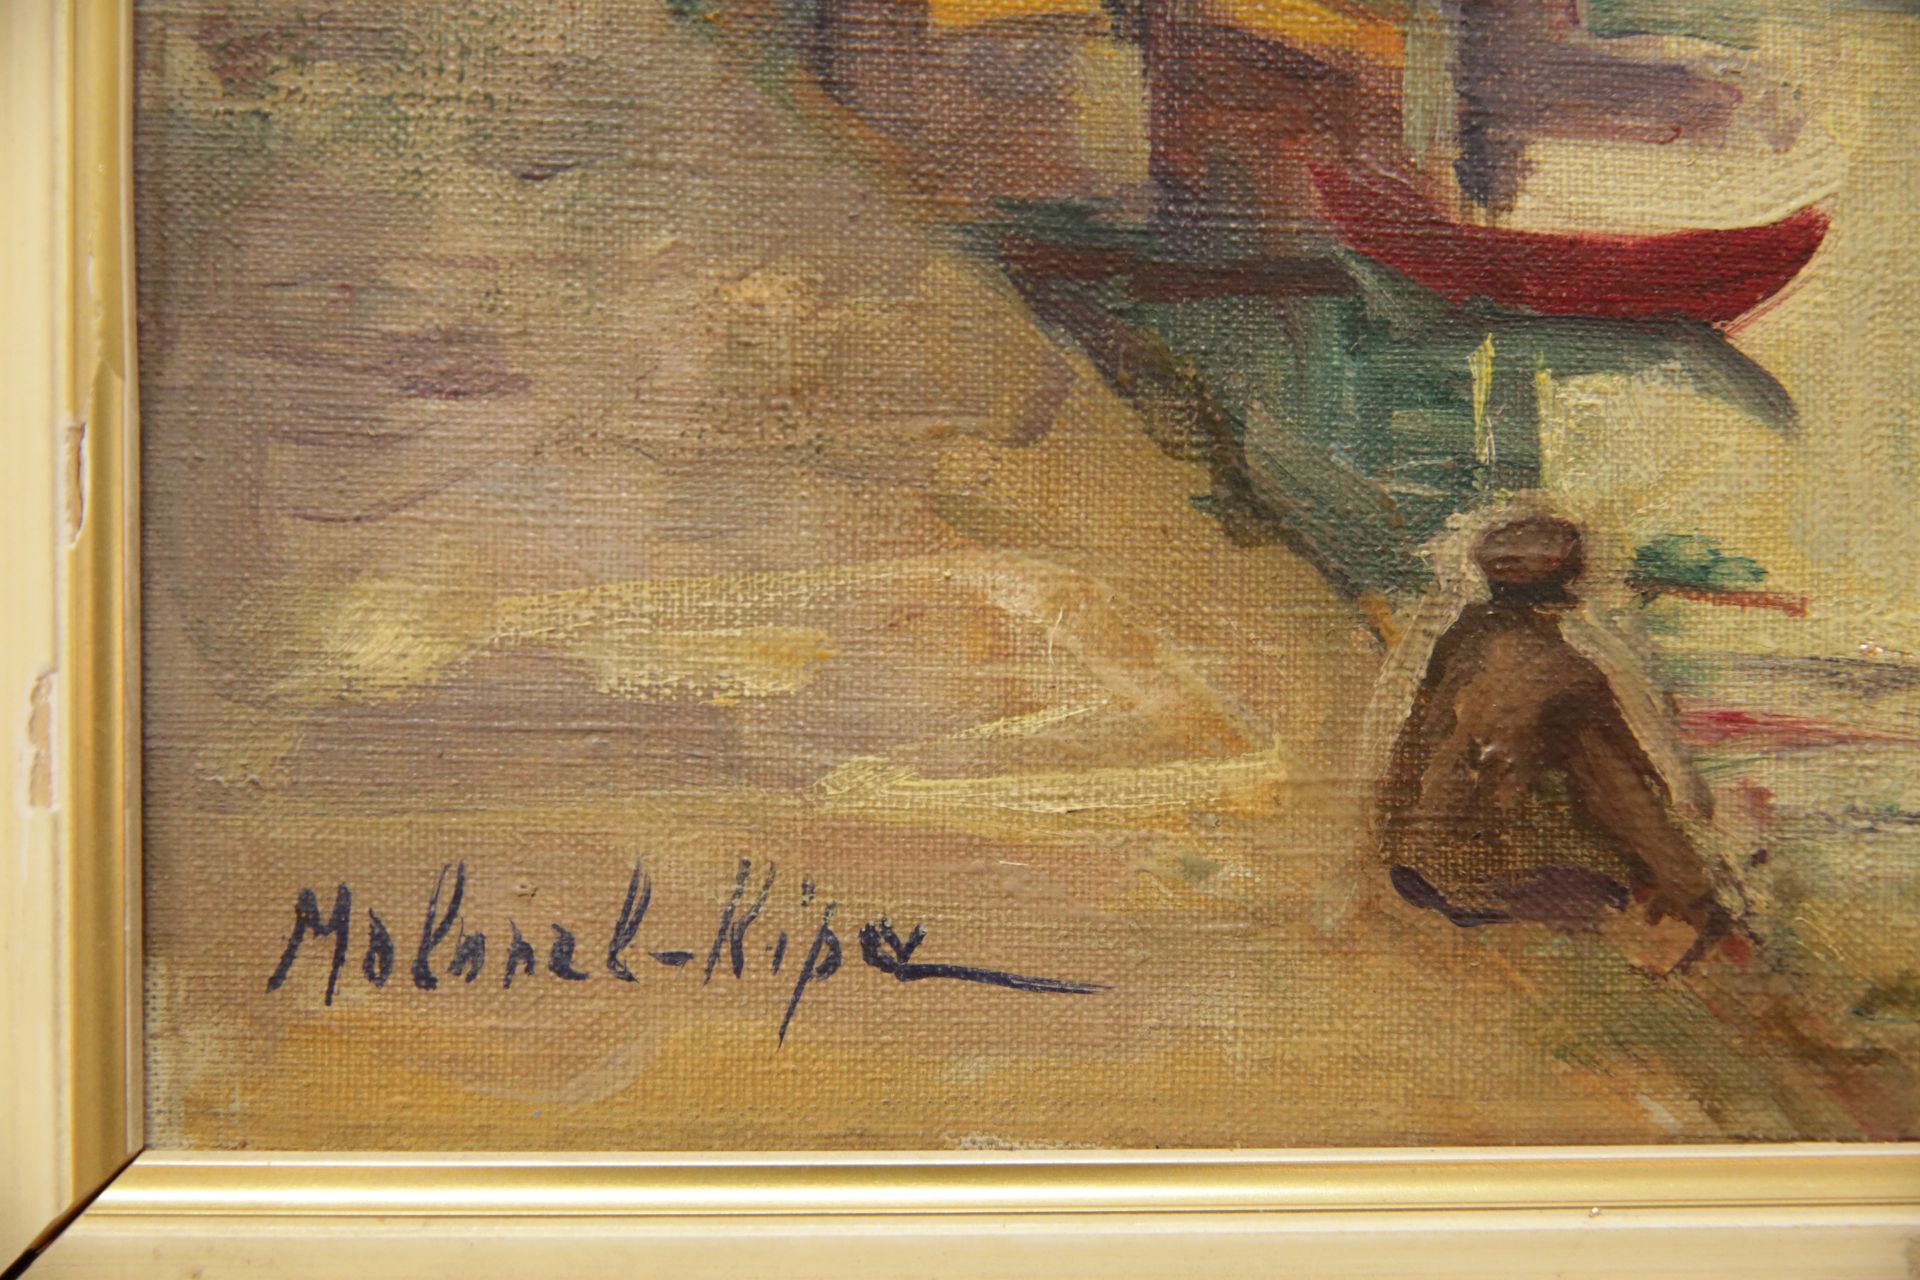 Molonel-Kipa (1906-1966) "Quai et barge", oil on canvas, Russia - France artist. - Bild 4 aus 4